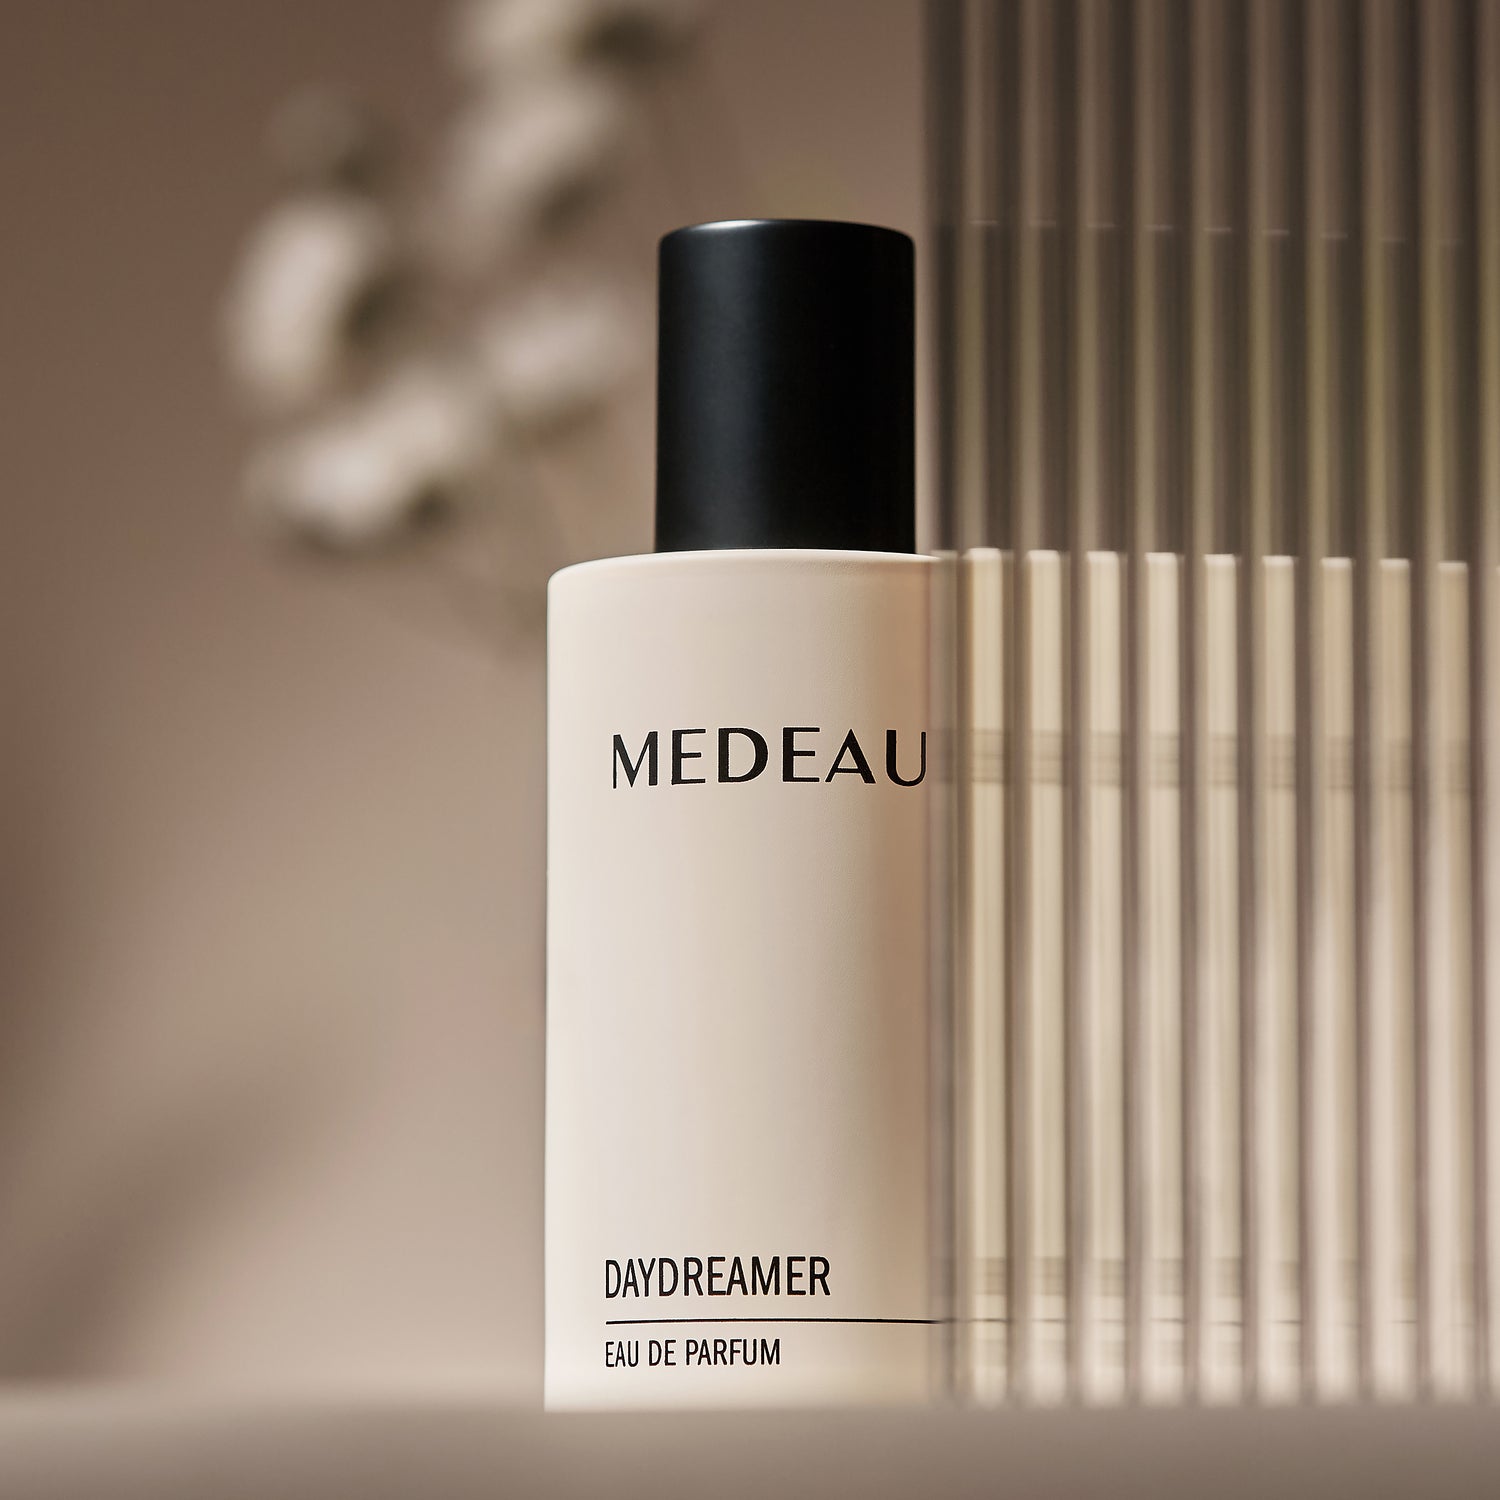 Medeau’s Best-Selling Fragrance: Unveiling Daydreamer’s Springtime Renewal